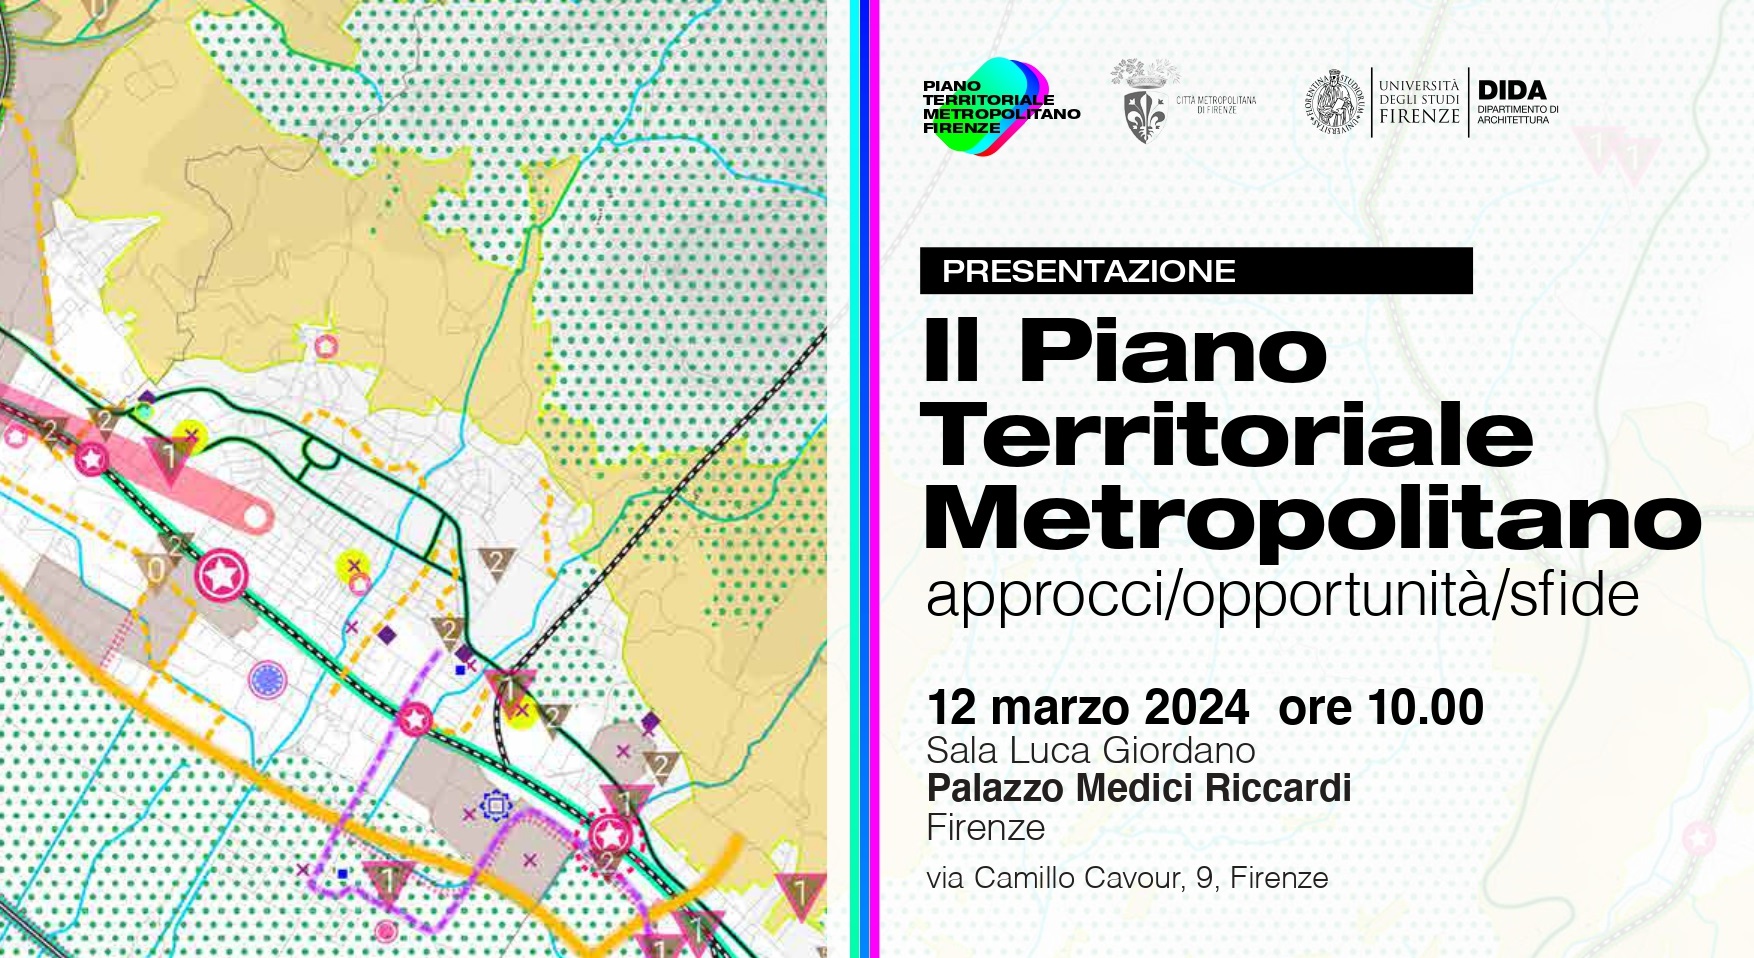 Il Piano Territoriale Metropolitano: approcci/opportunit/sfide